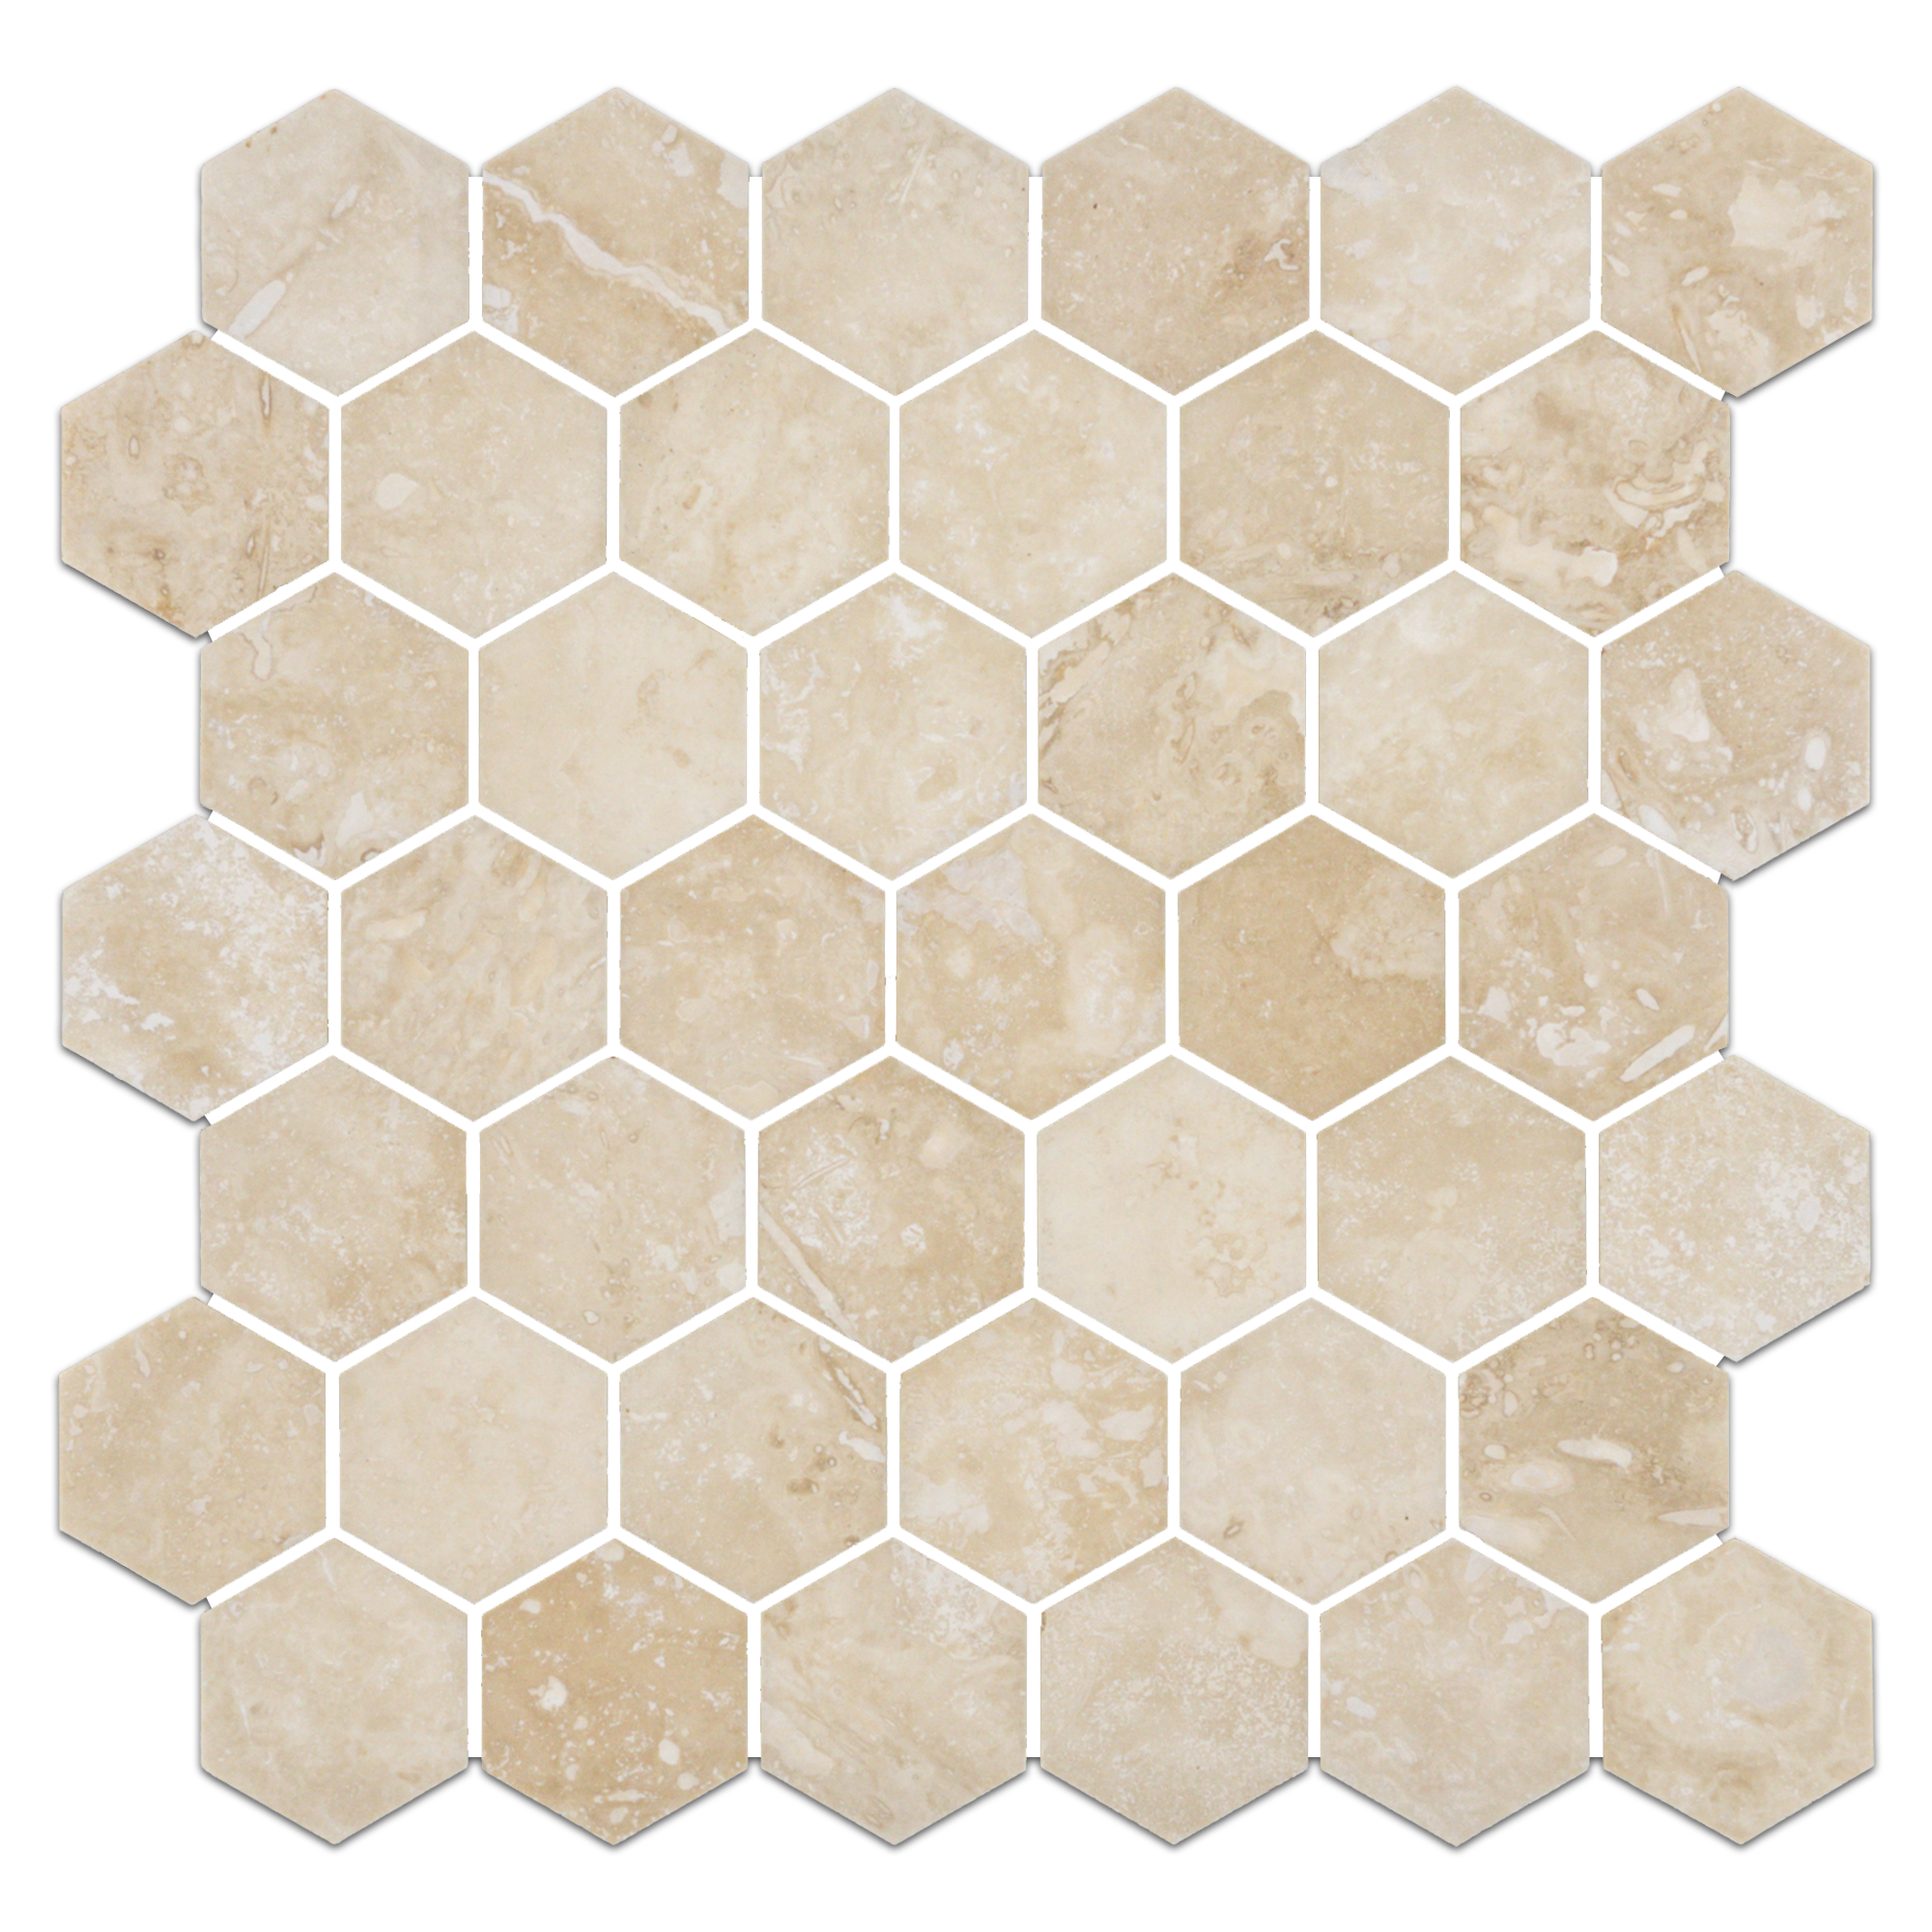 Elon Ivory Light Cross Cut Travertine Hexagon Field Mosaic Tile 11.75x11.9375x0.375 Honed - Surface Group International